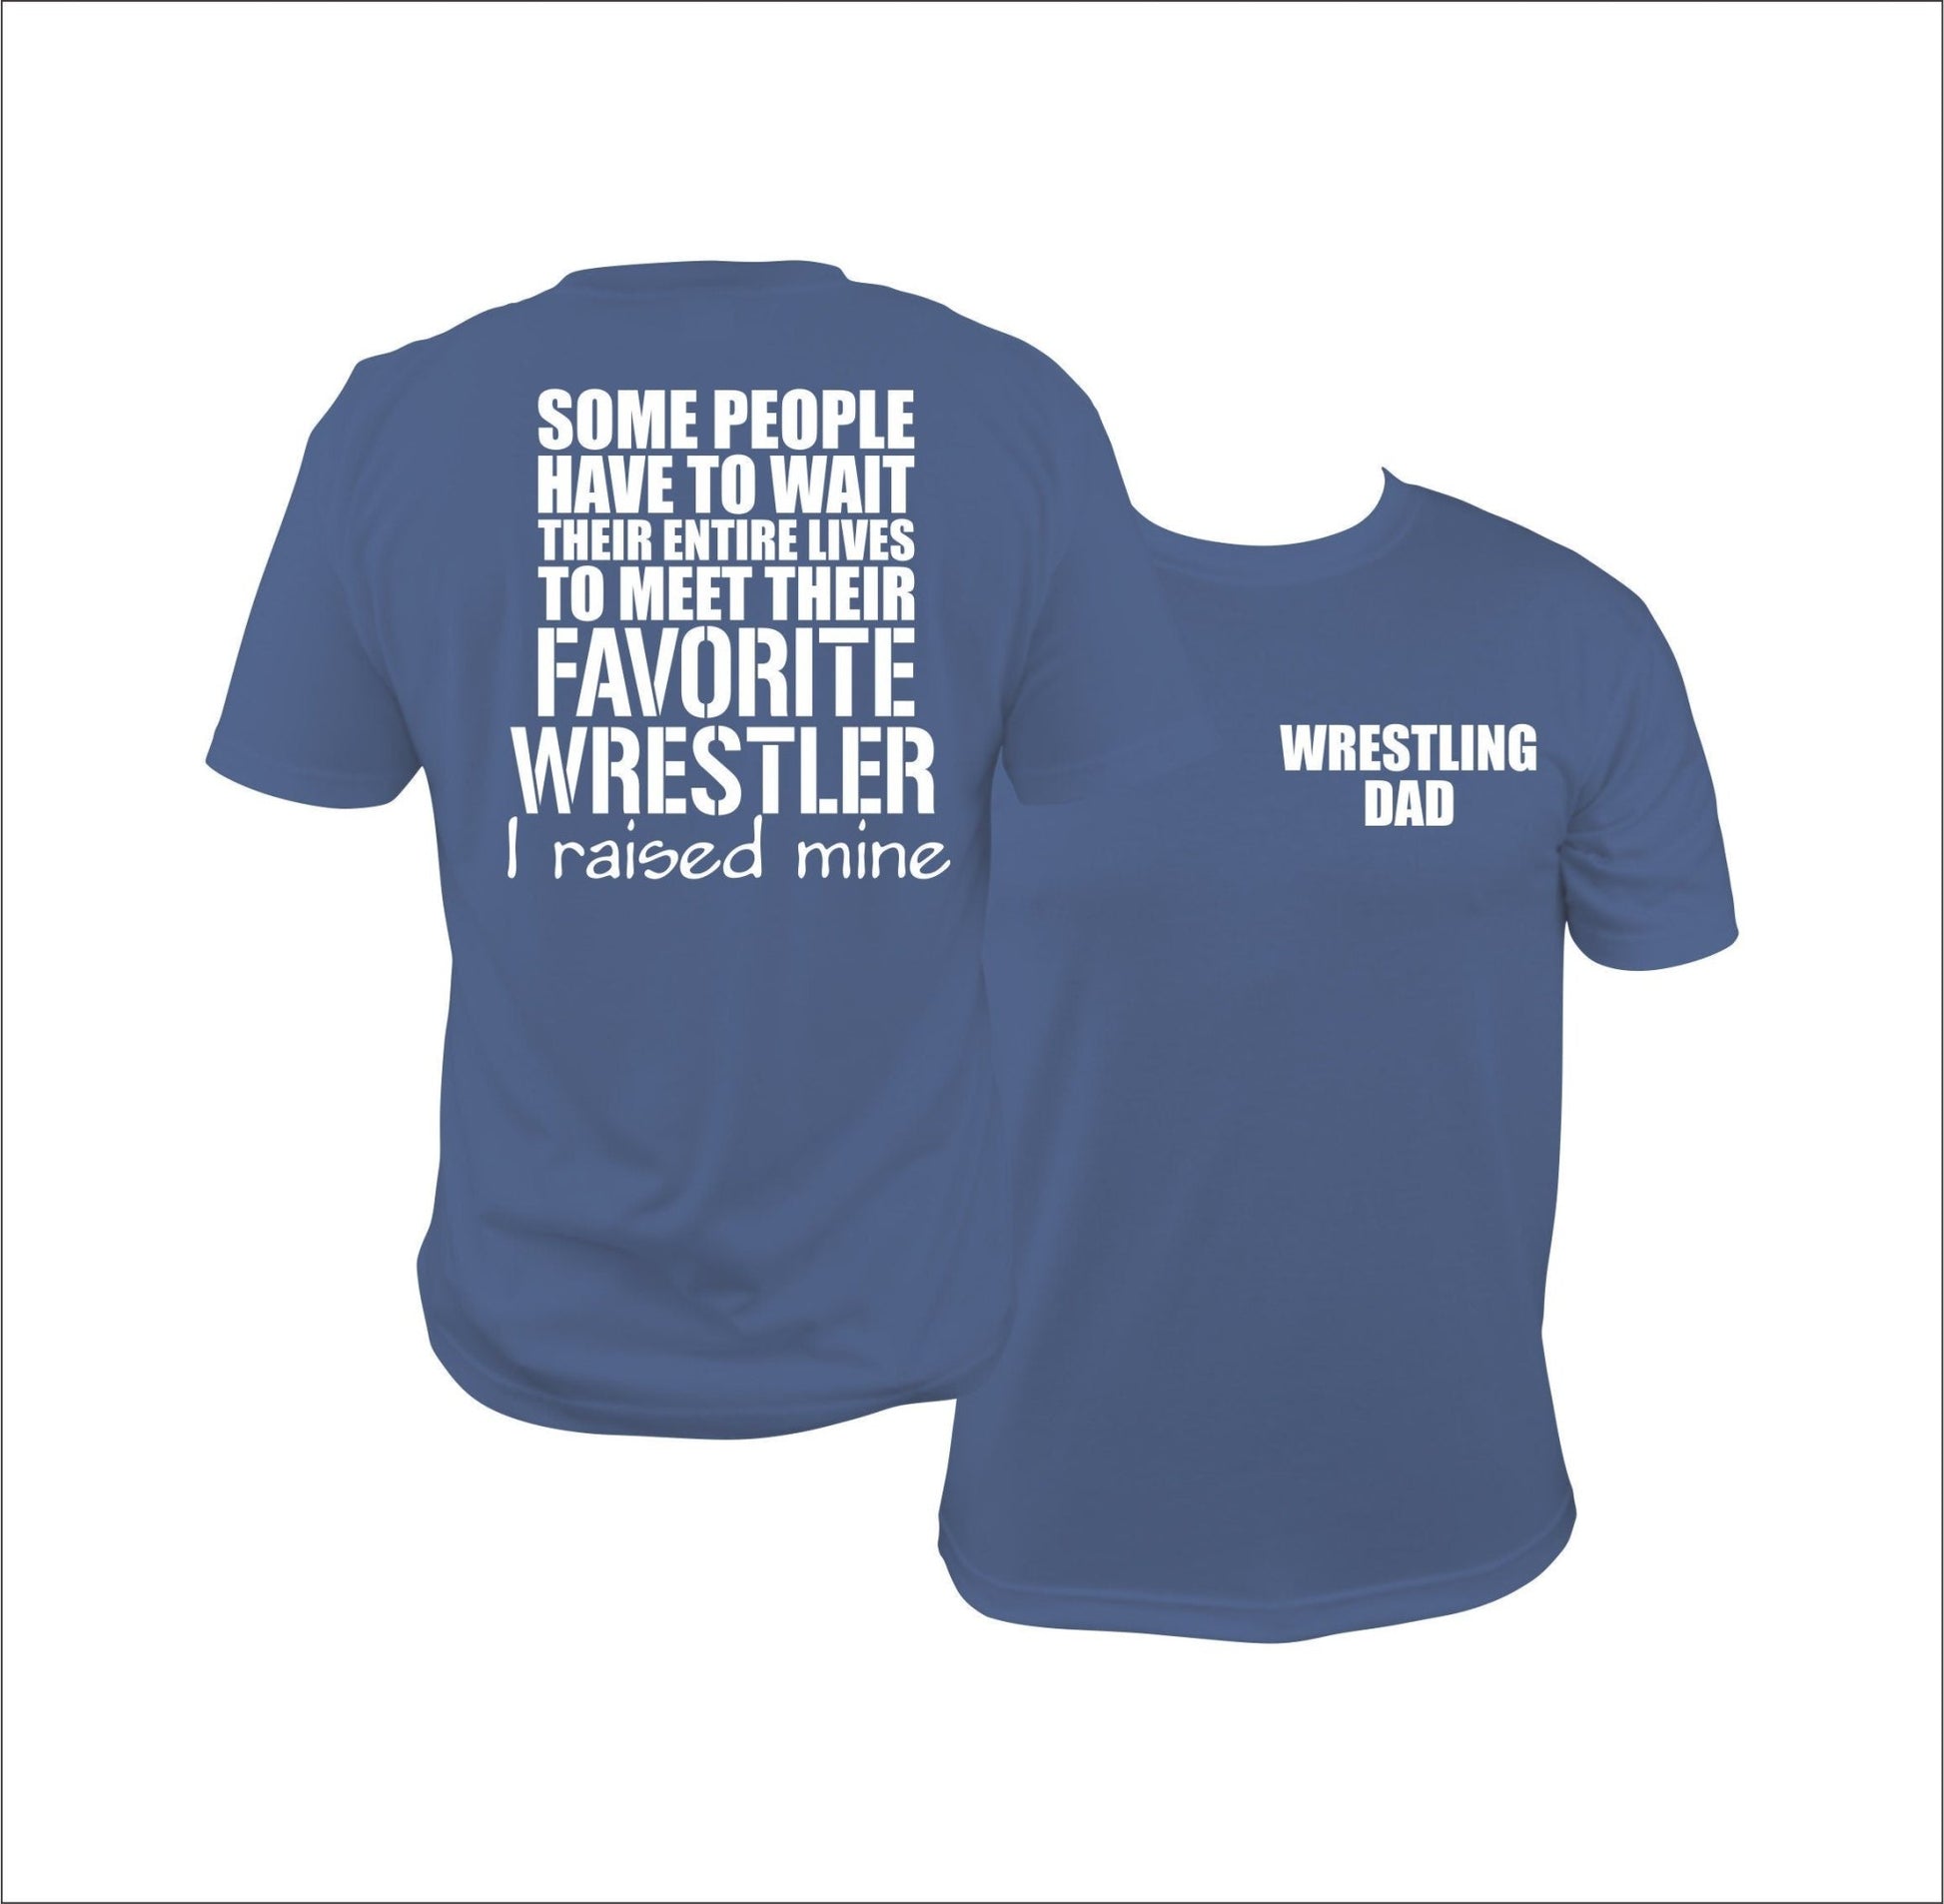 Wrestling dad shirt, I raised my favorite wrestler - SBS T Shop